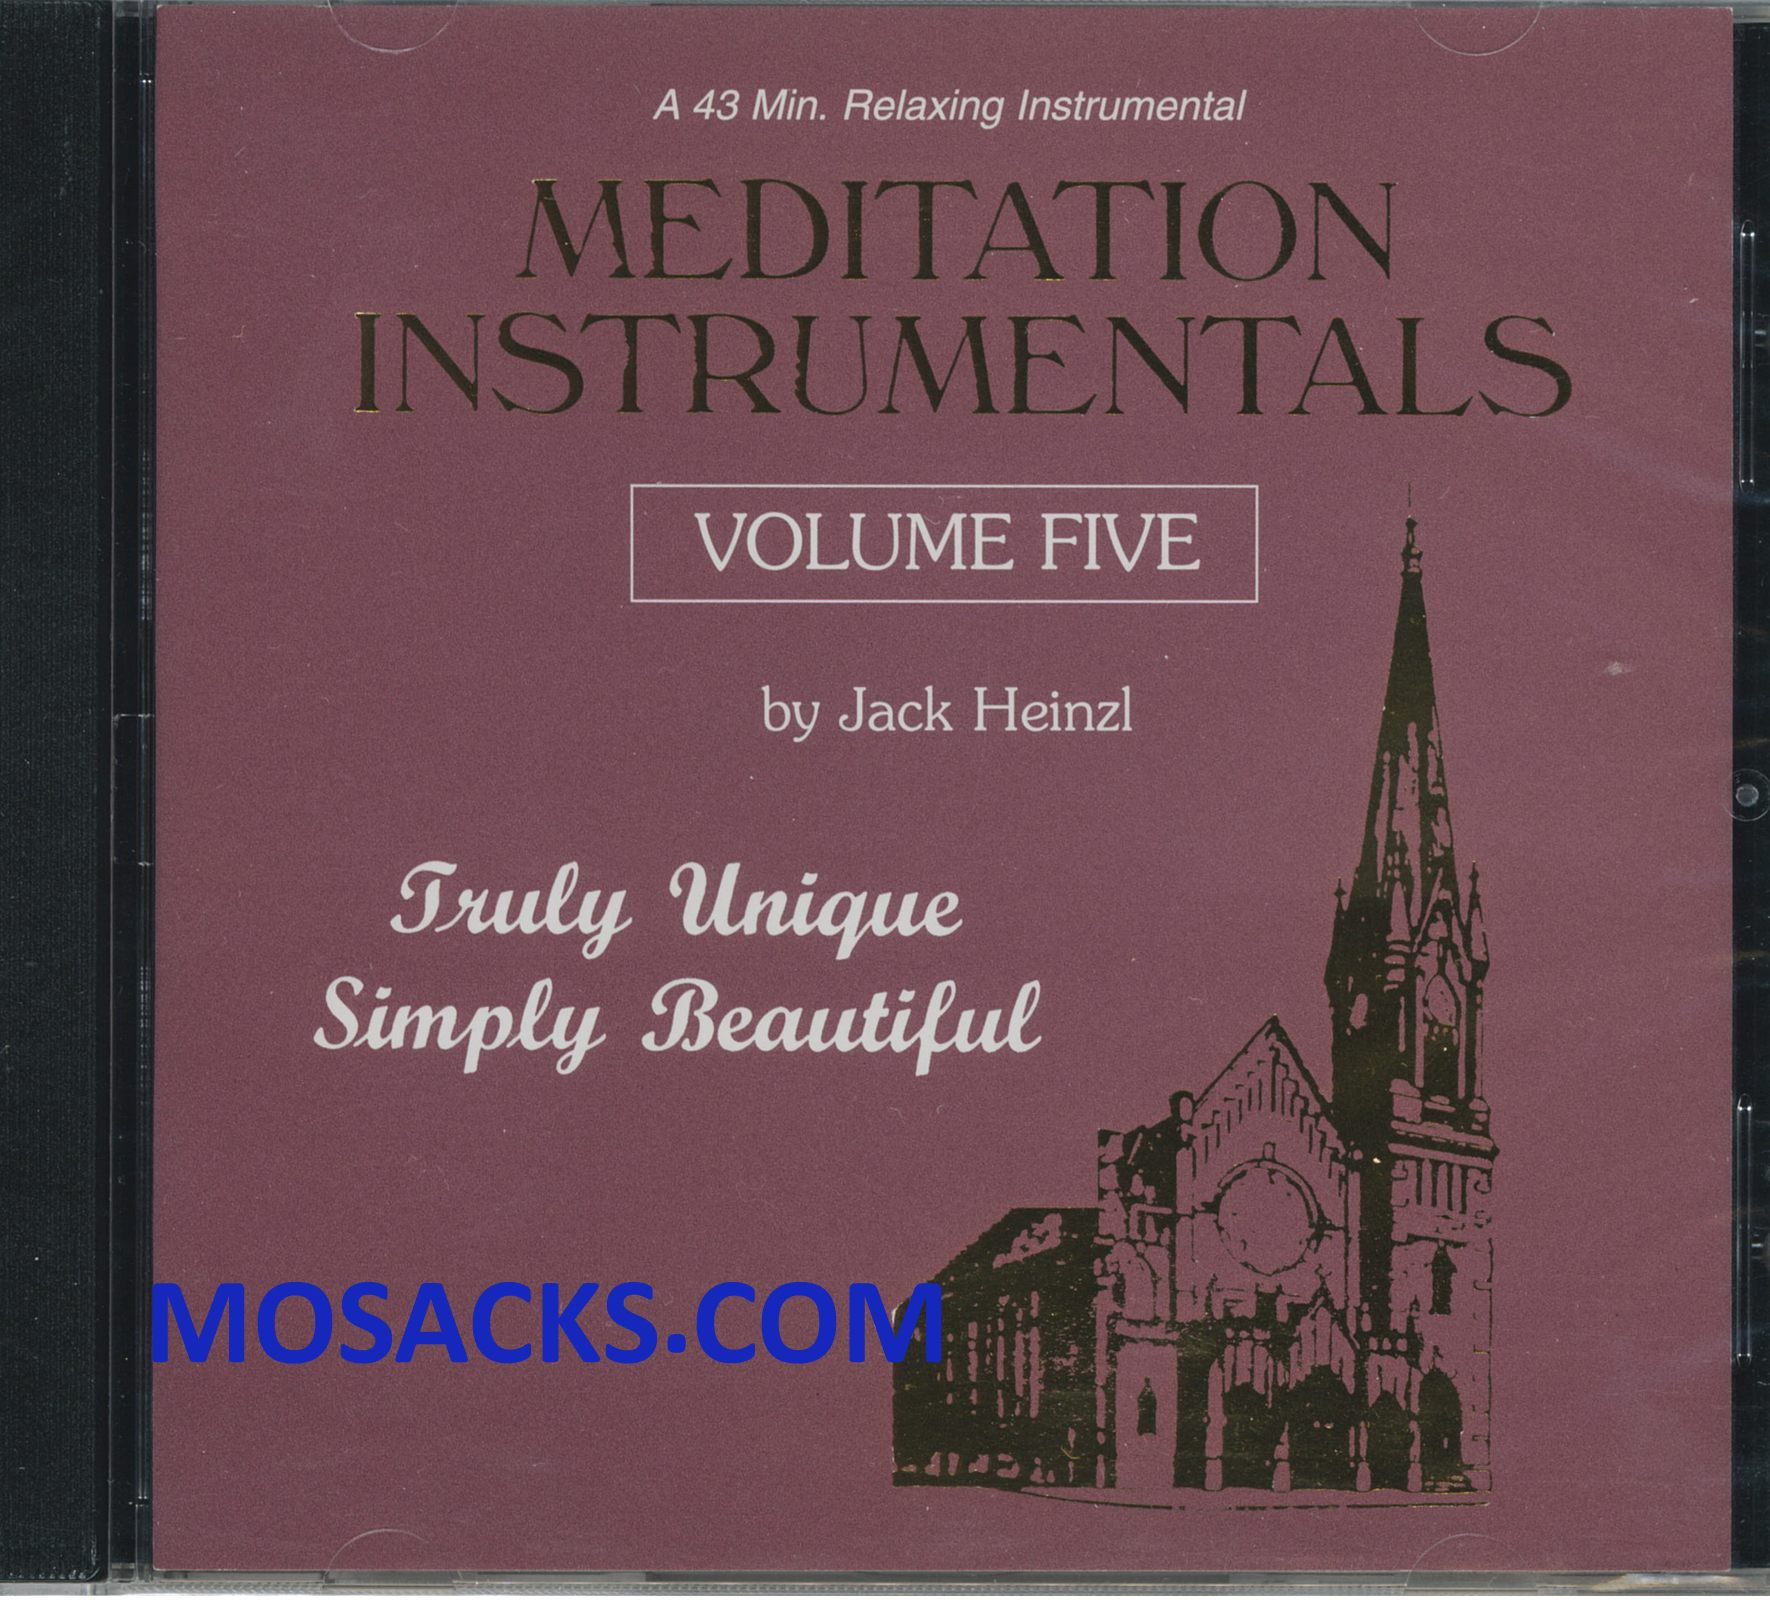 Meditation Instrumentals Volume 5 by Jack Heinzl 285-675430520005